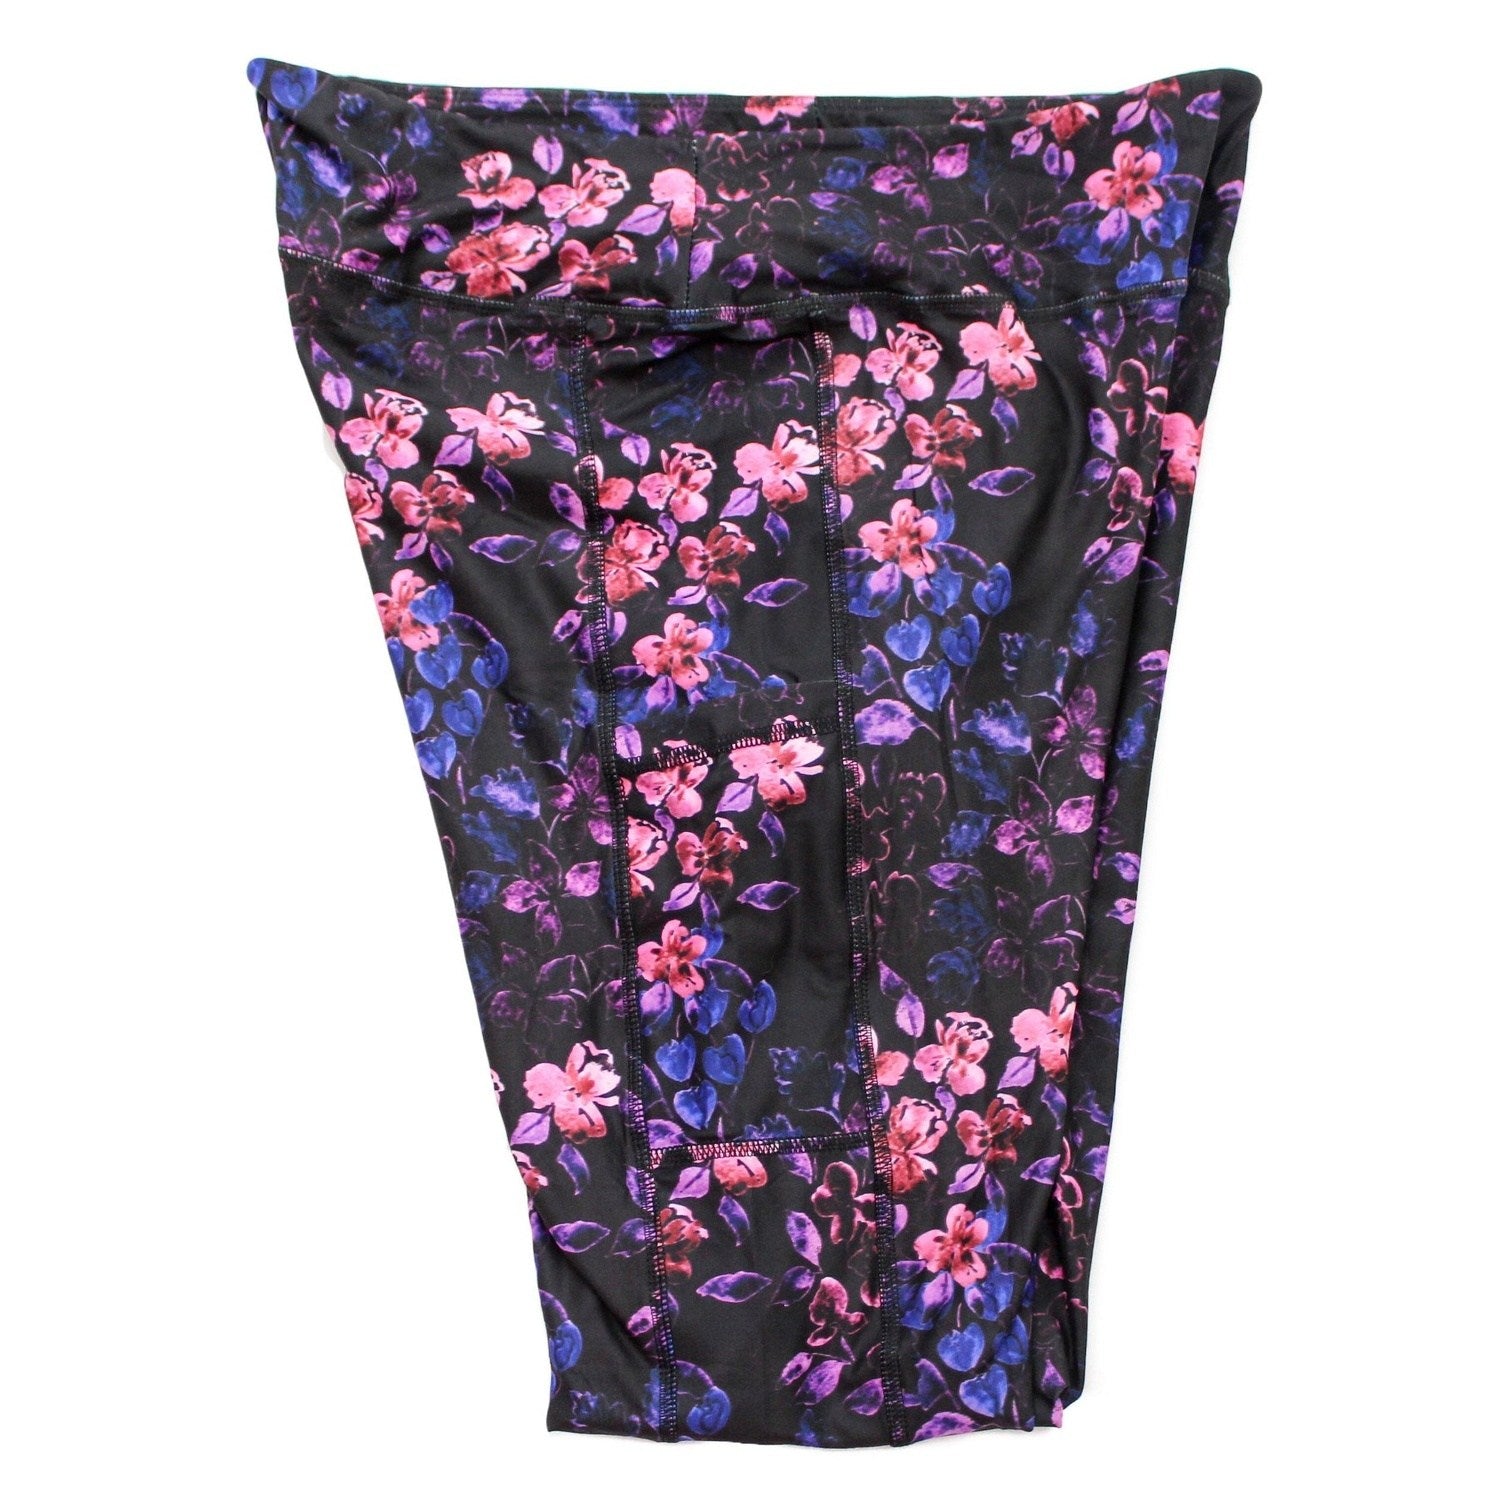 Velvet Iris Leggings with Pockets Colorful Design